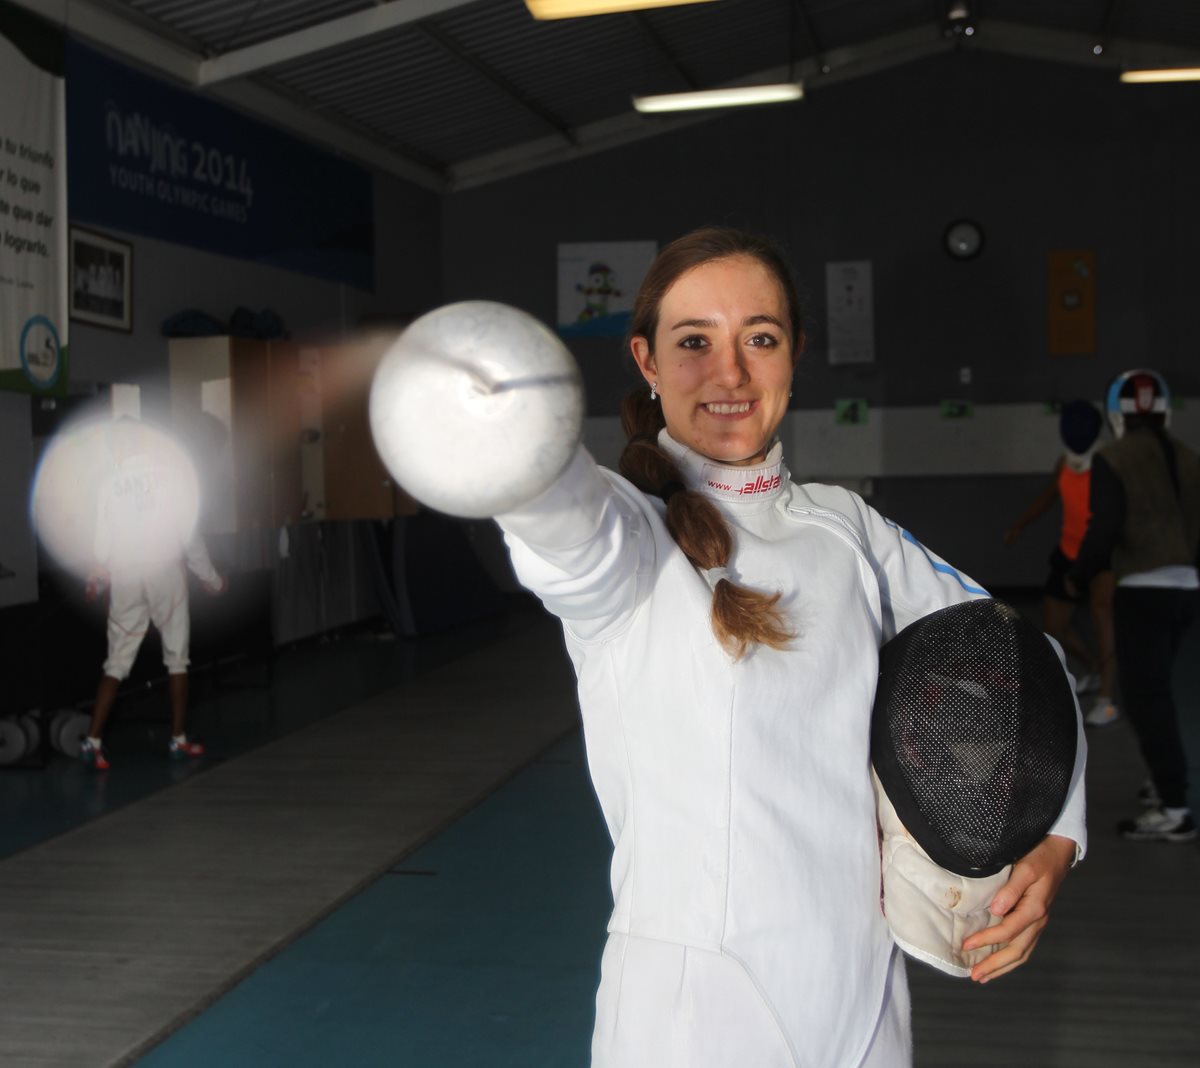 Isabel Brand participará en los Juegos Olímpicos de Río 2016 en pentatlón moderno. (Foto Prensa Libre: Carlos Vicente).